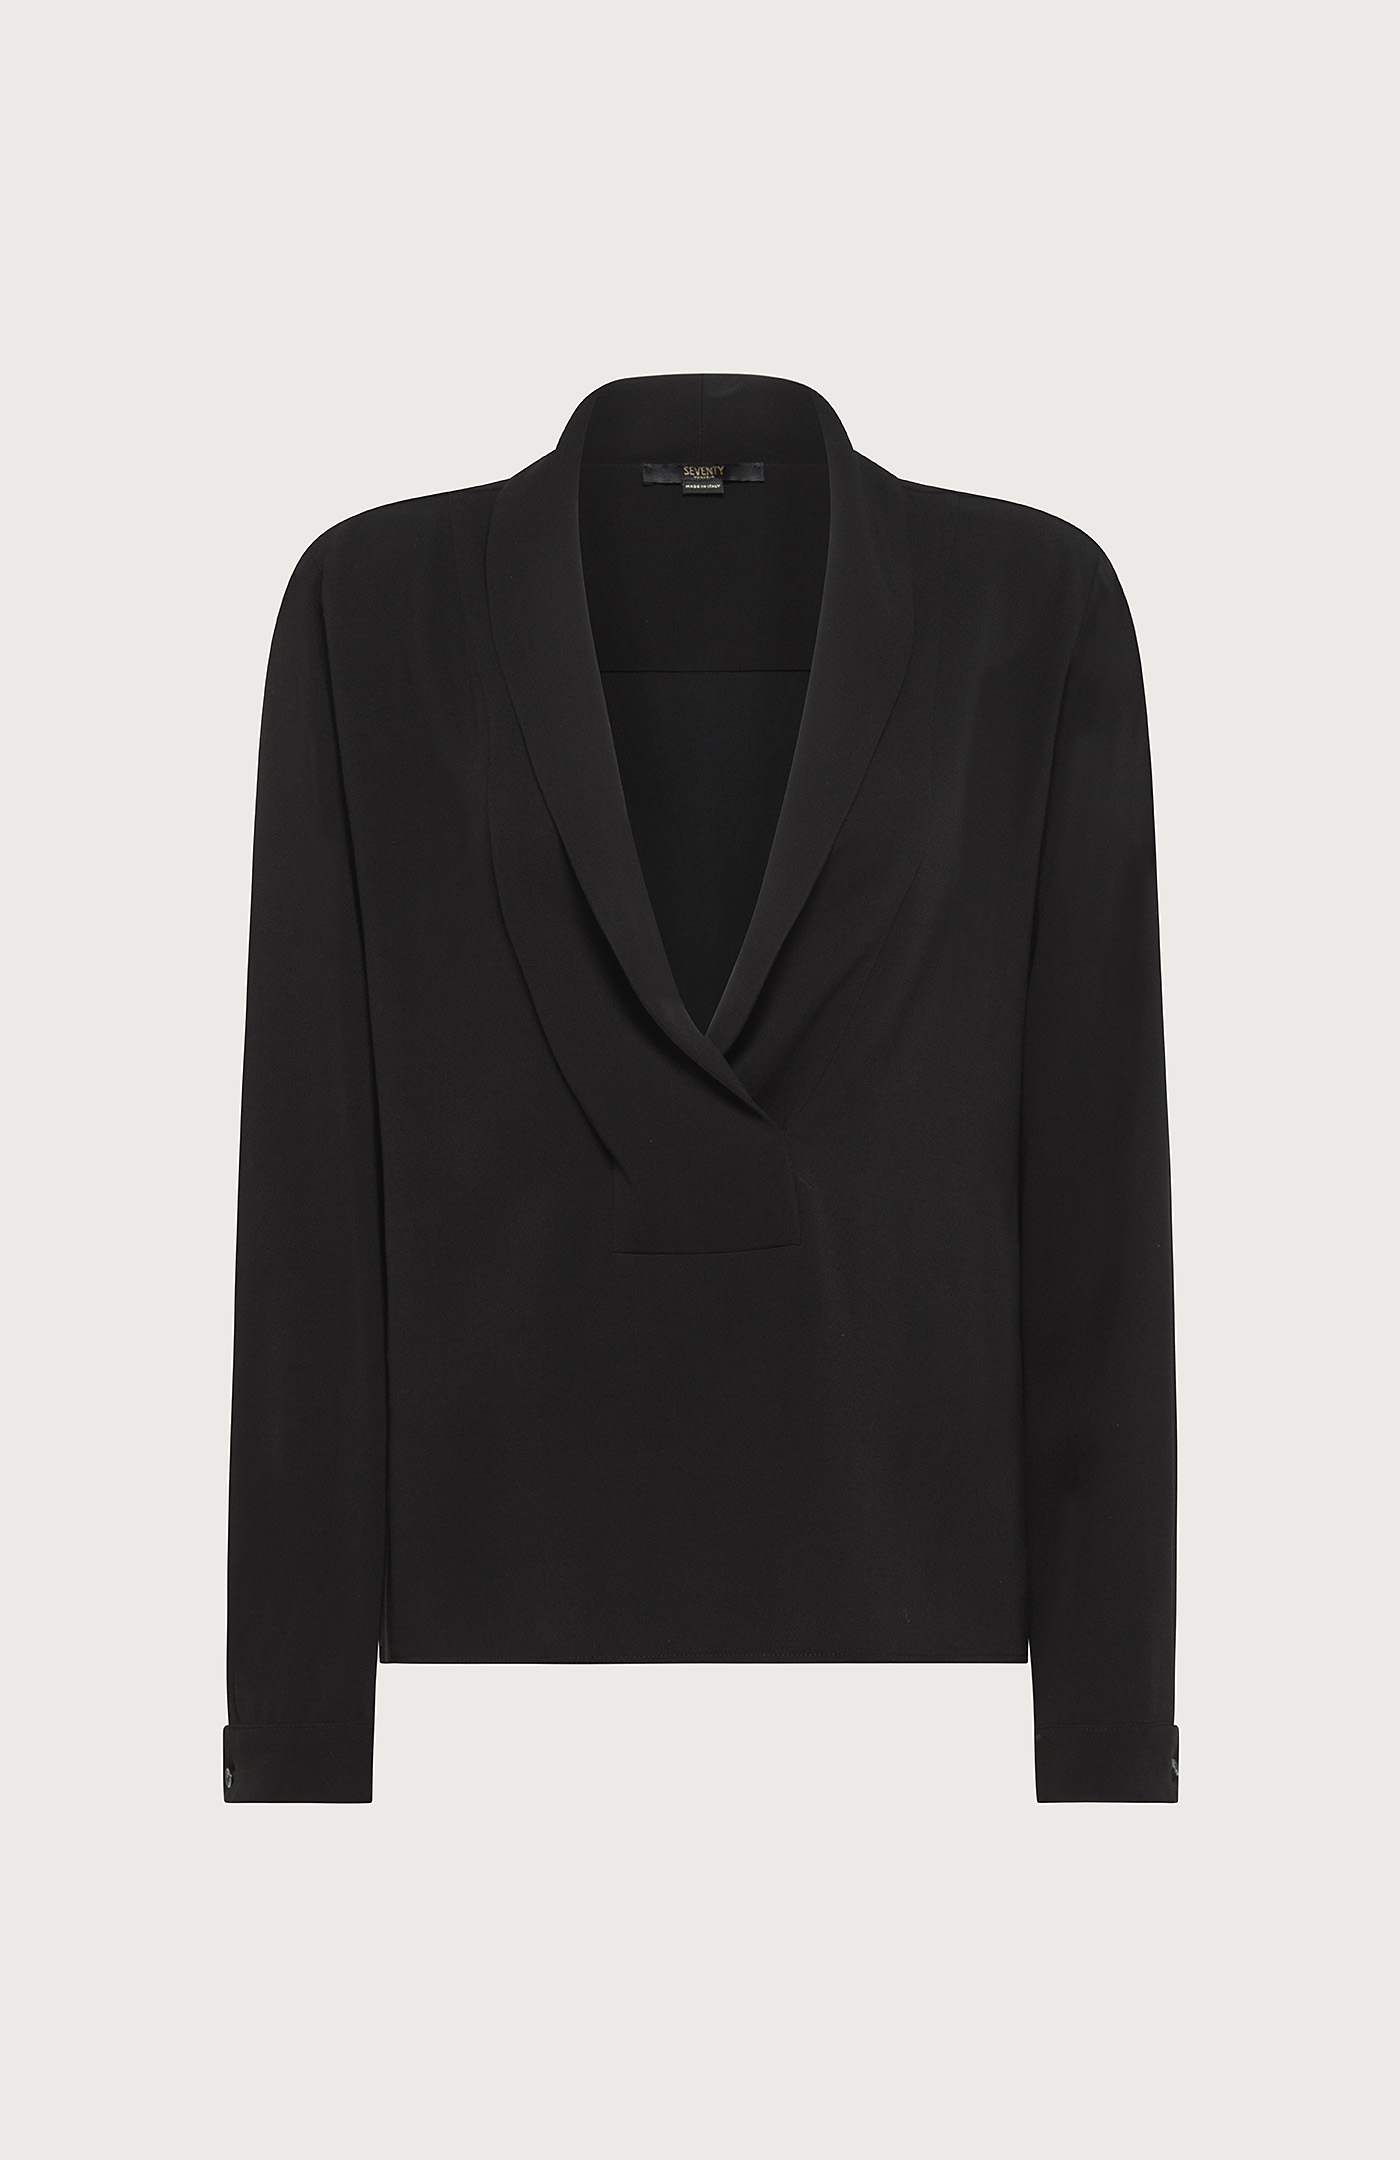 Elegant jacket with a shawl collar - Col. Grey/Black | Seventy®